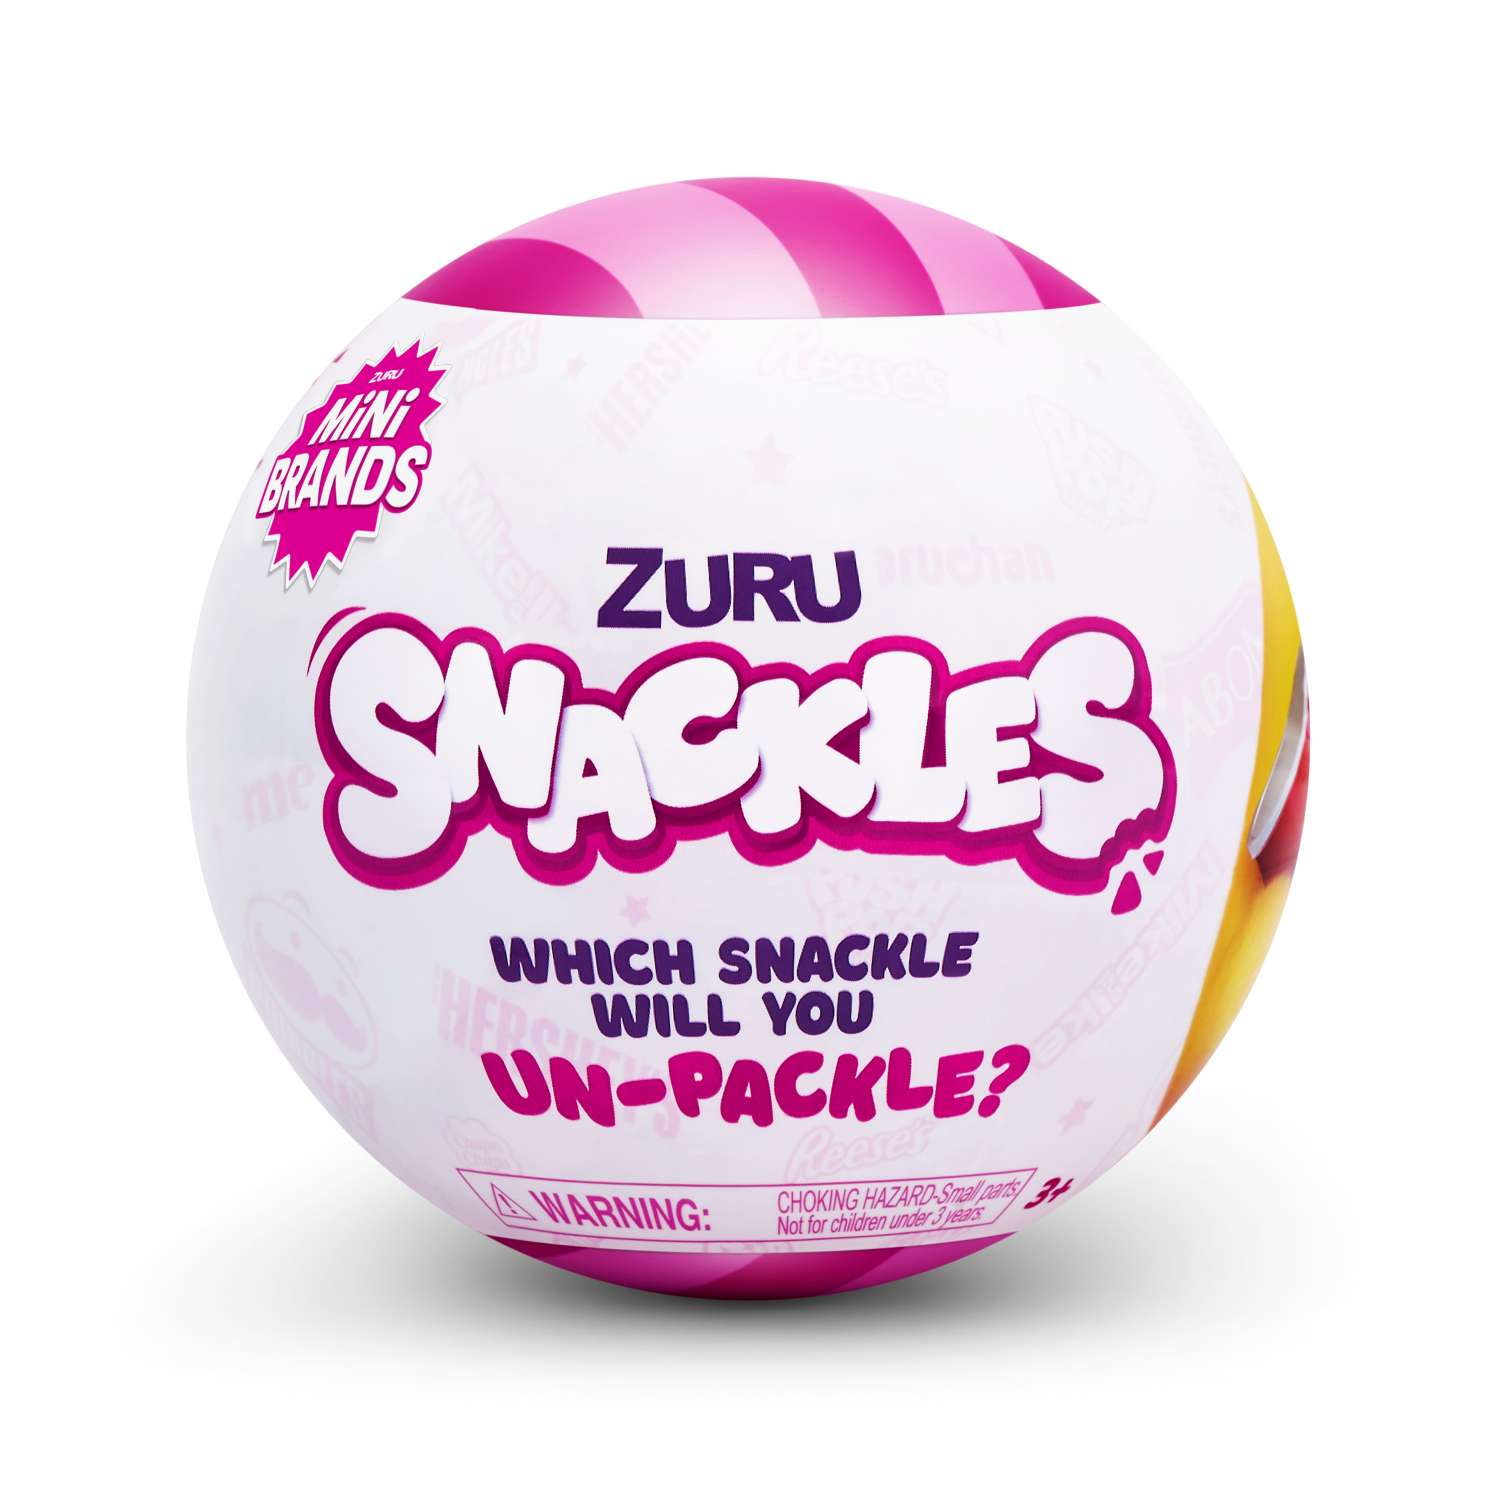 Игрушка Zuru 5 surprise Шар в непрозрачной упаковке (Сюрприз) 77453 - фото 1